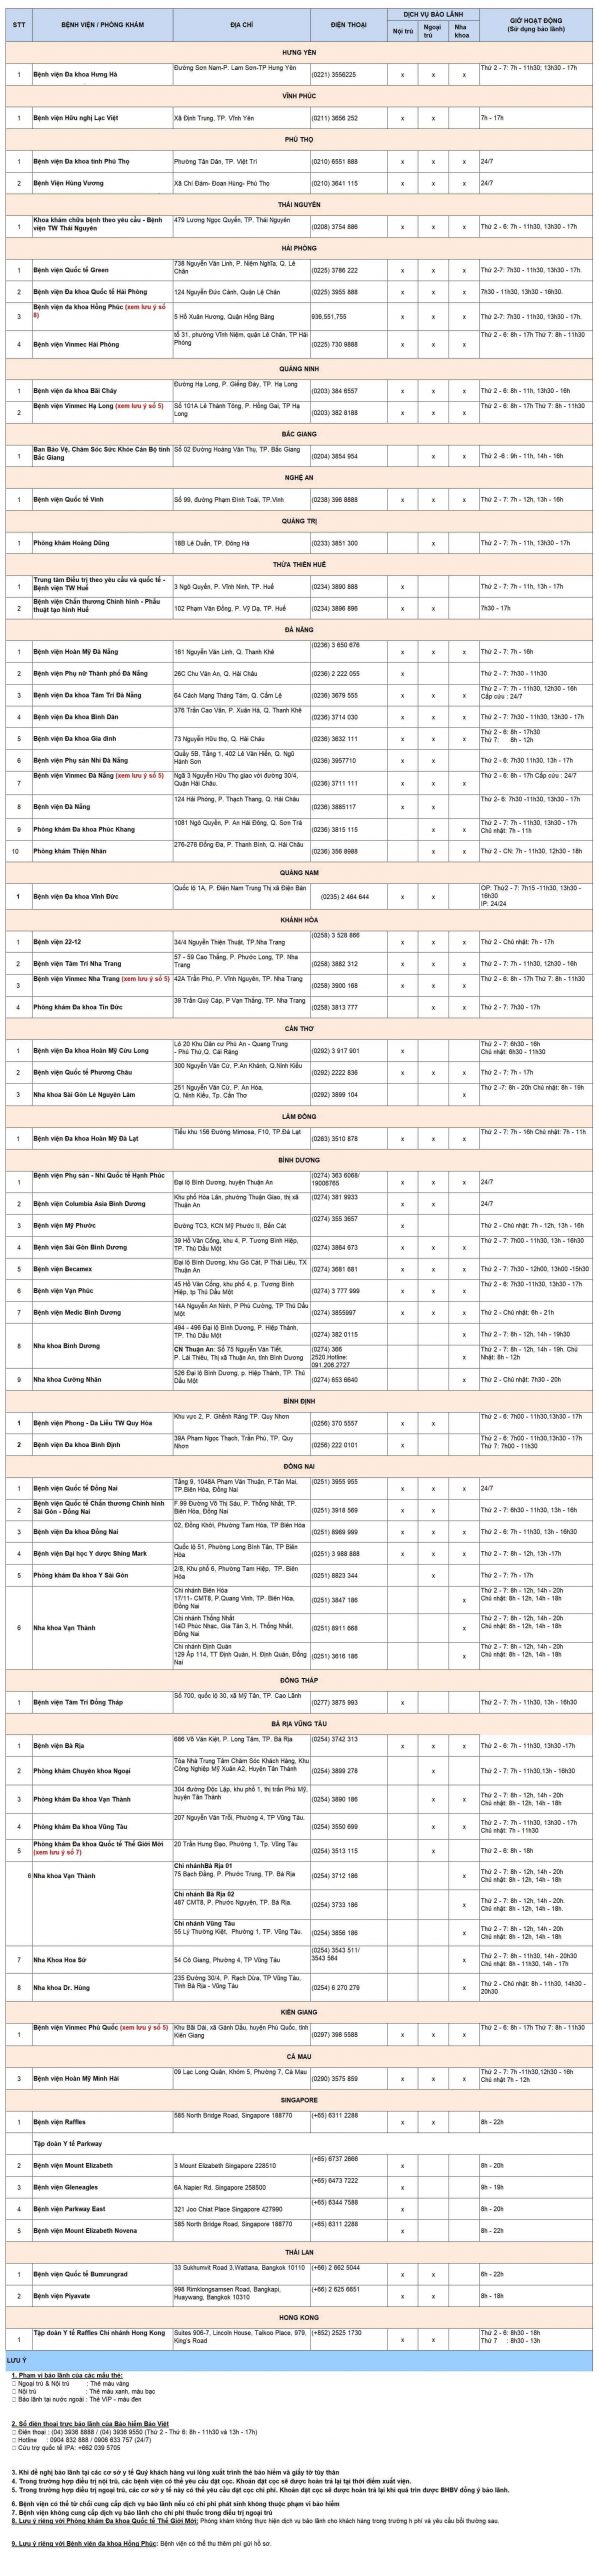 Danh sách các bệnh viên liên kết với bảo hiểm Bảo Việt tại tỉnh/tp khác